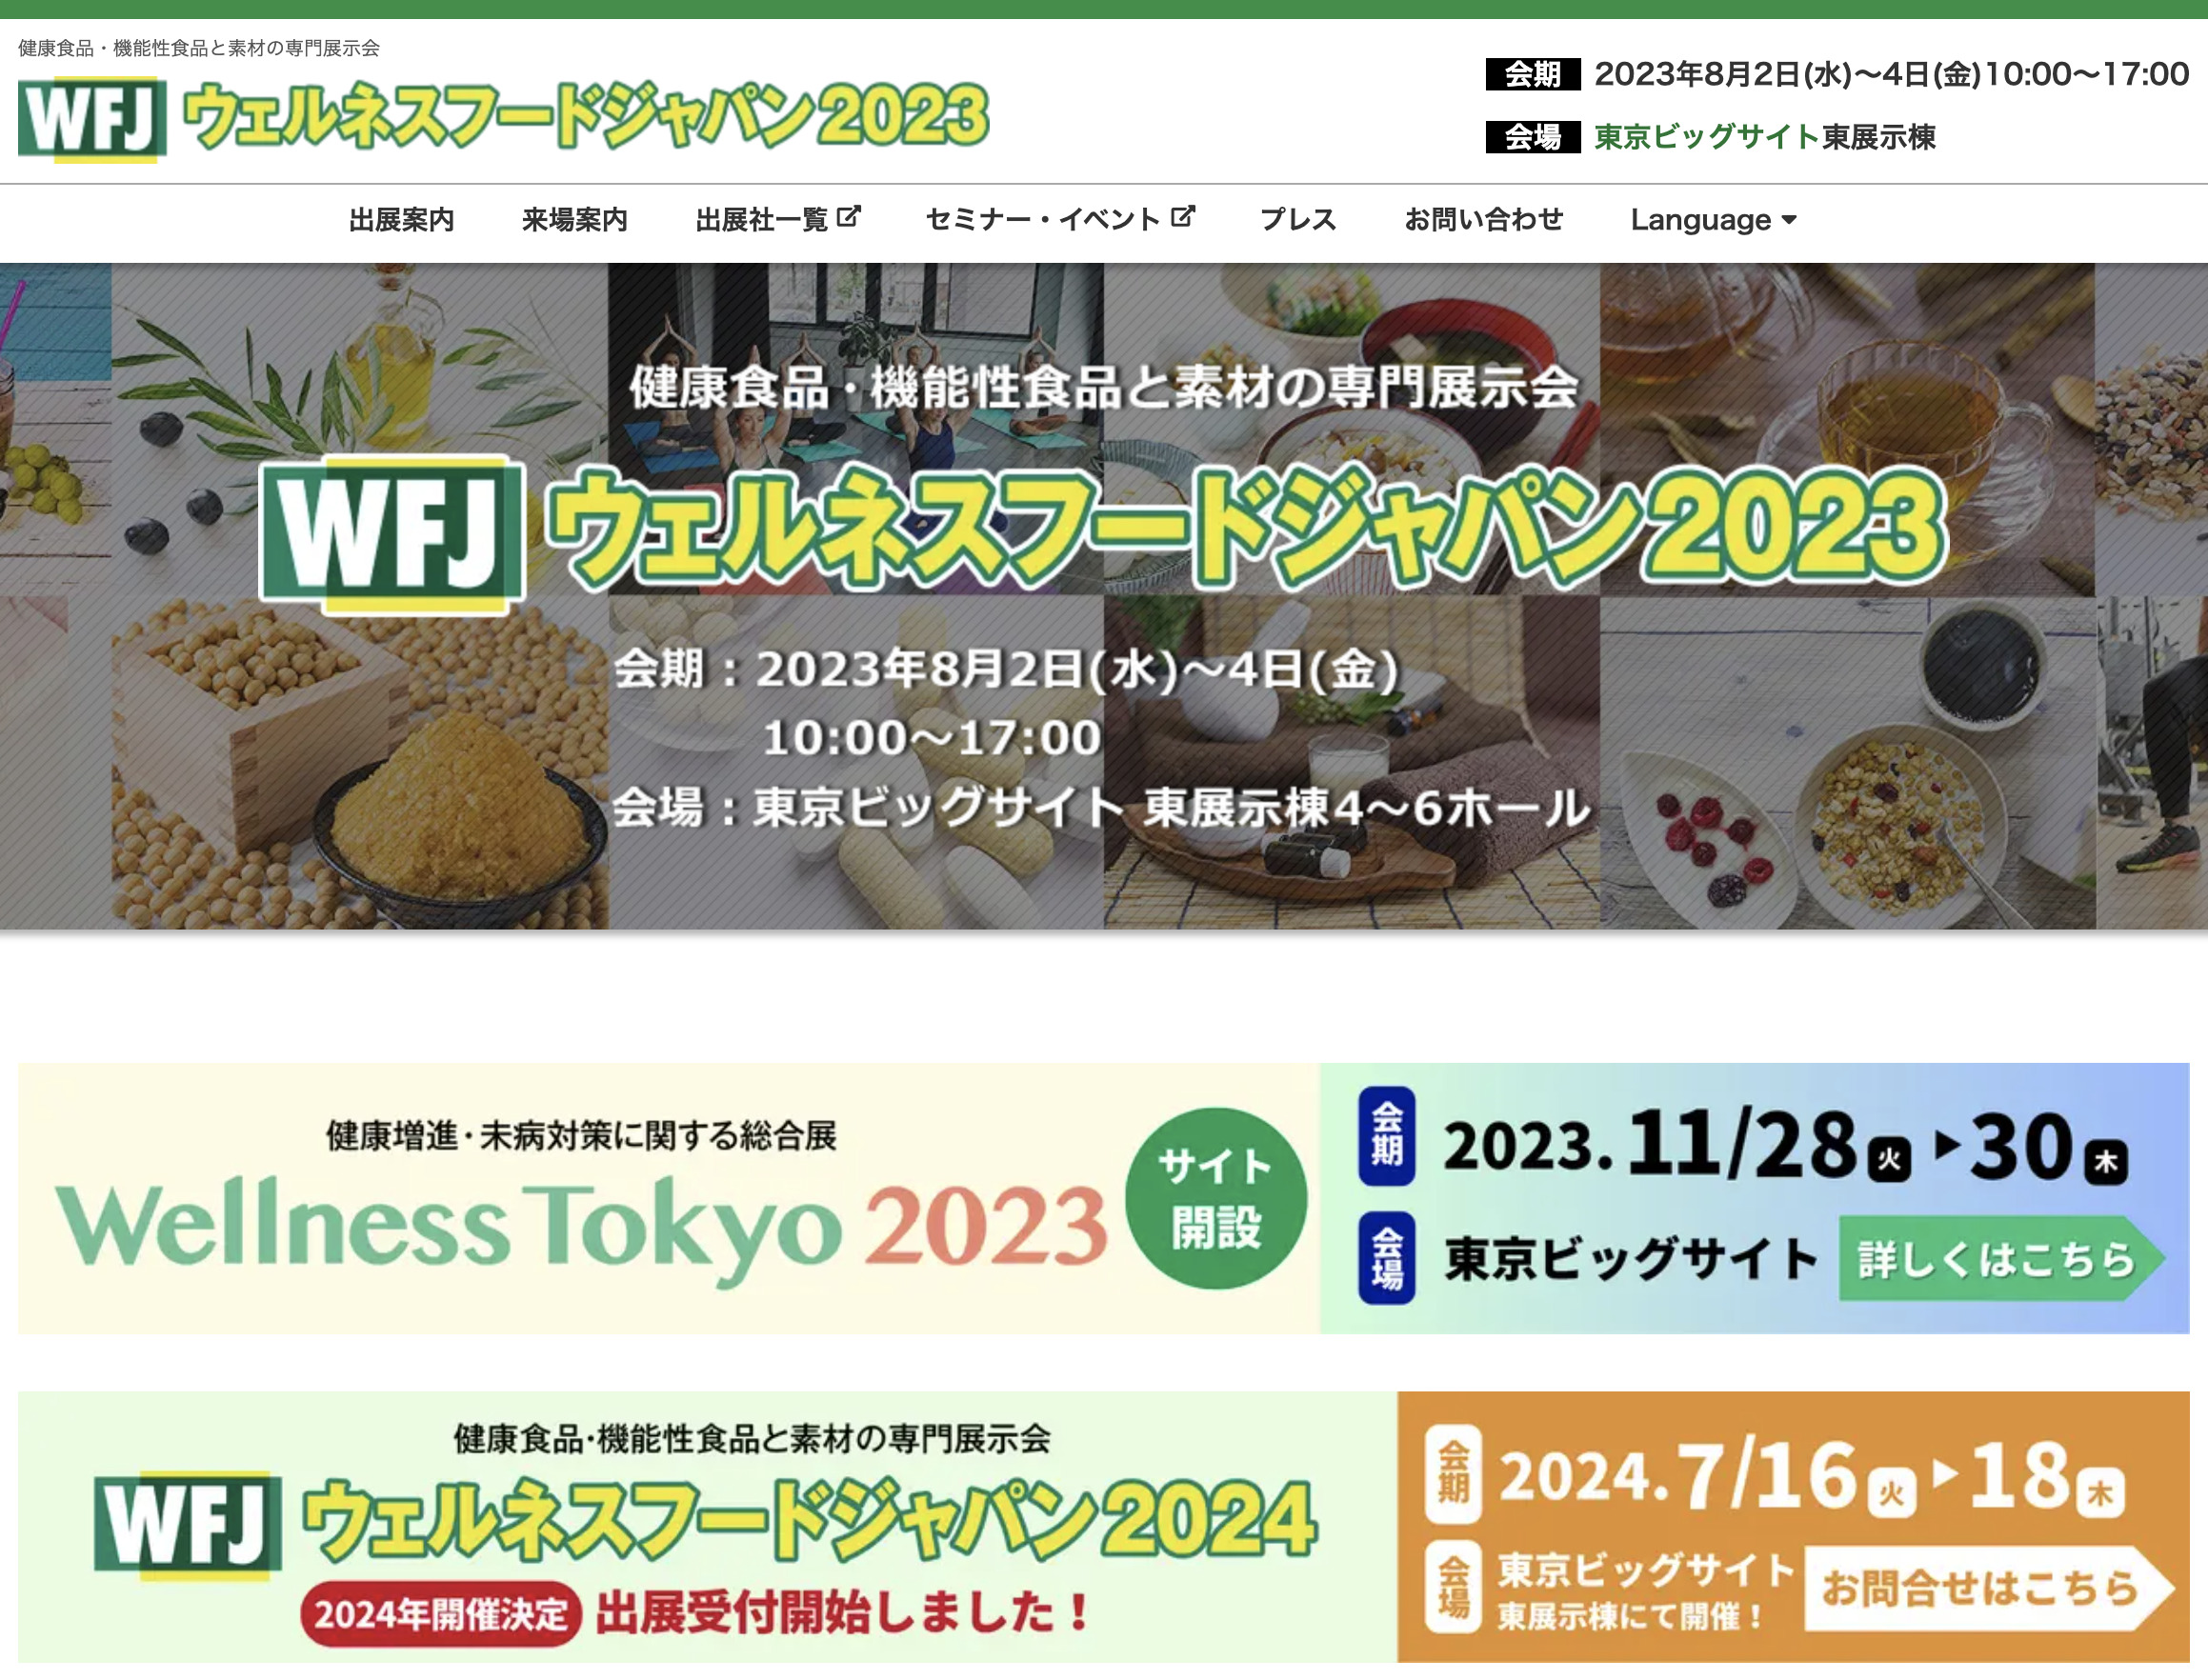 東京ビックサイト『ウェルネスフードジャパン2023』に出展いたします。